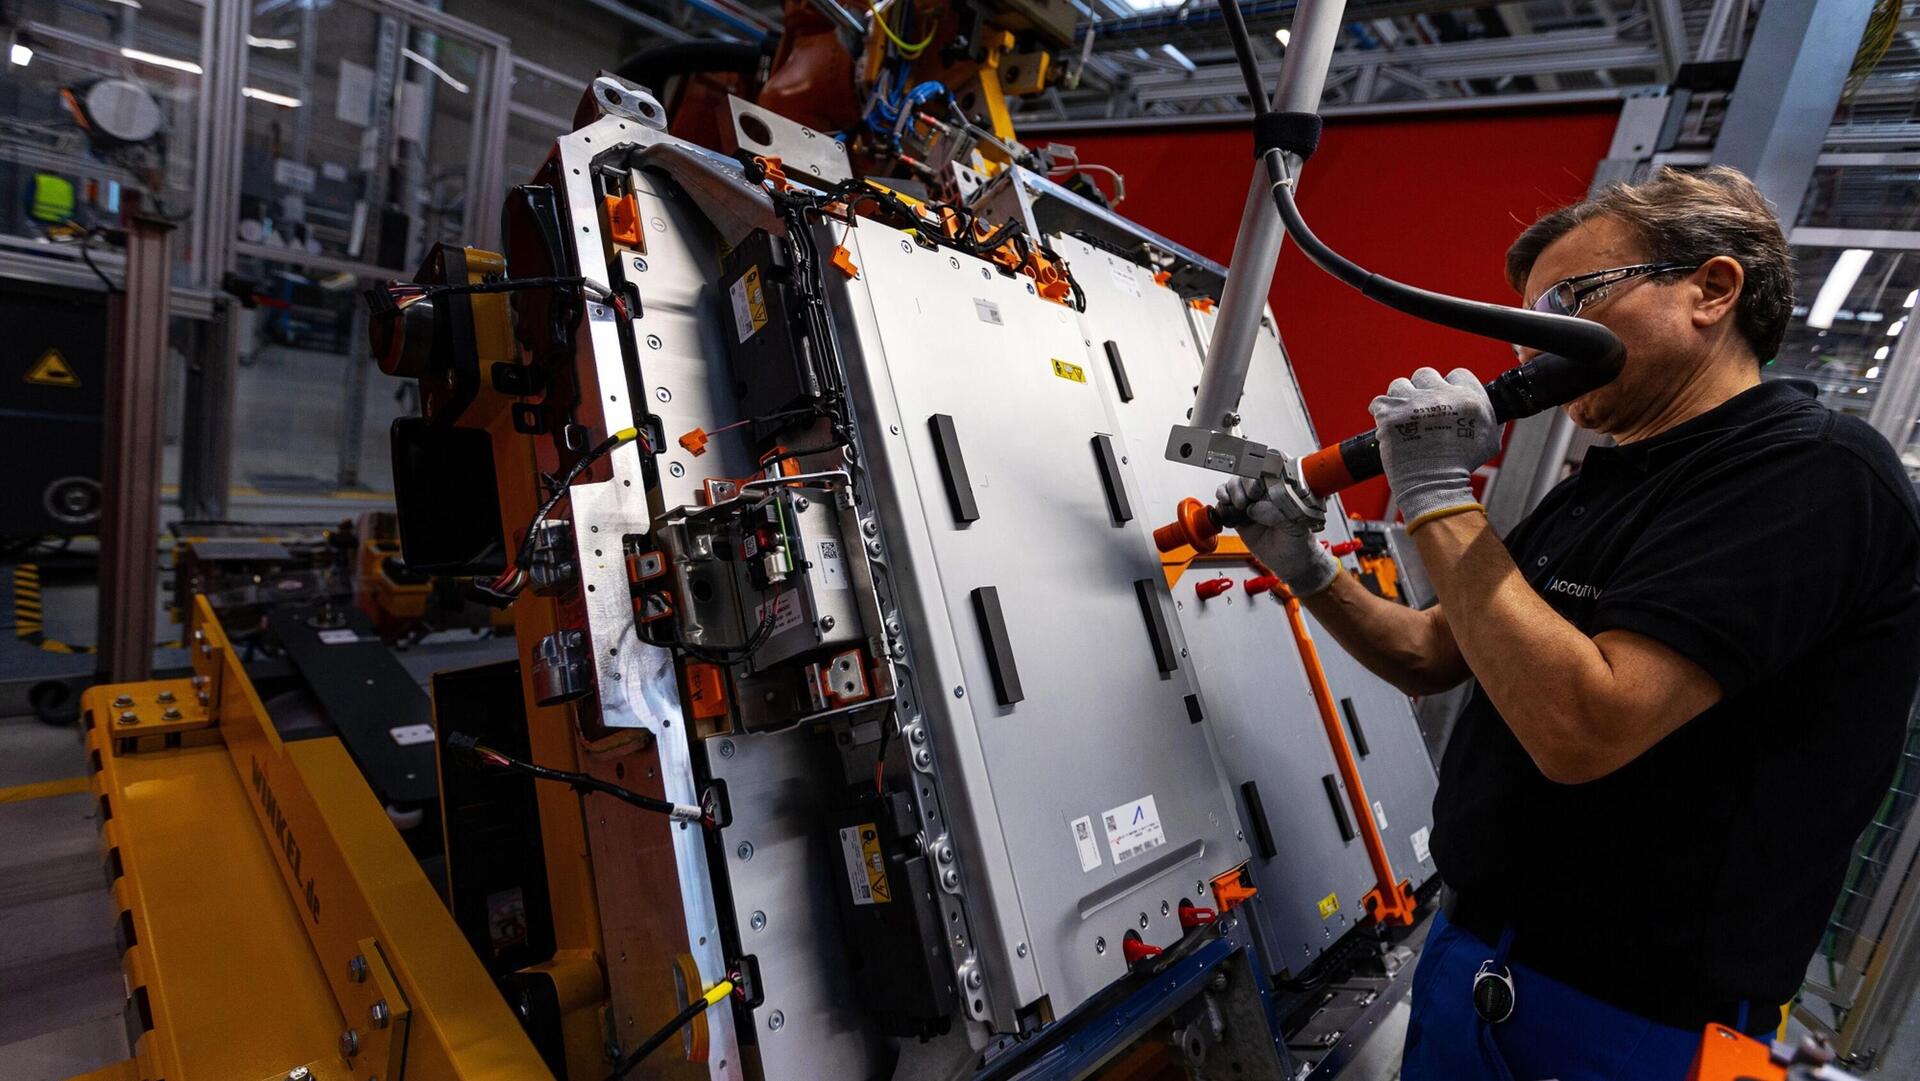 כלכליסט עובד במפעל להרכבת סוללות חשמליות של מרצדס בנץ בגרמניה